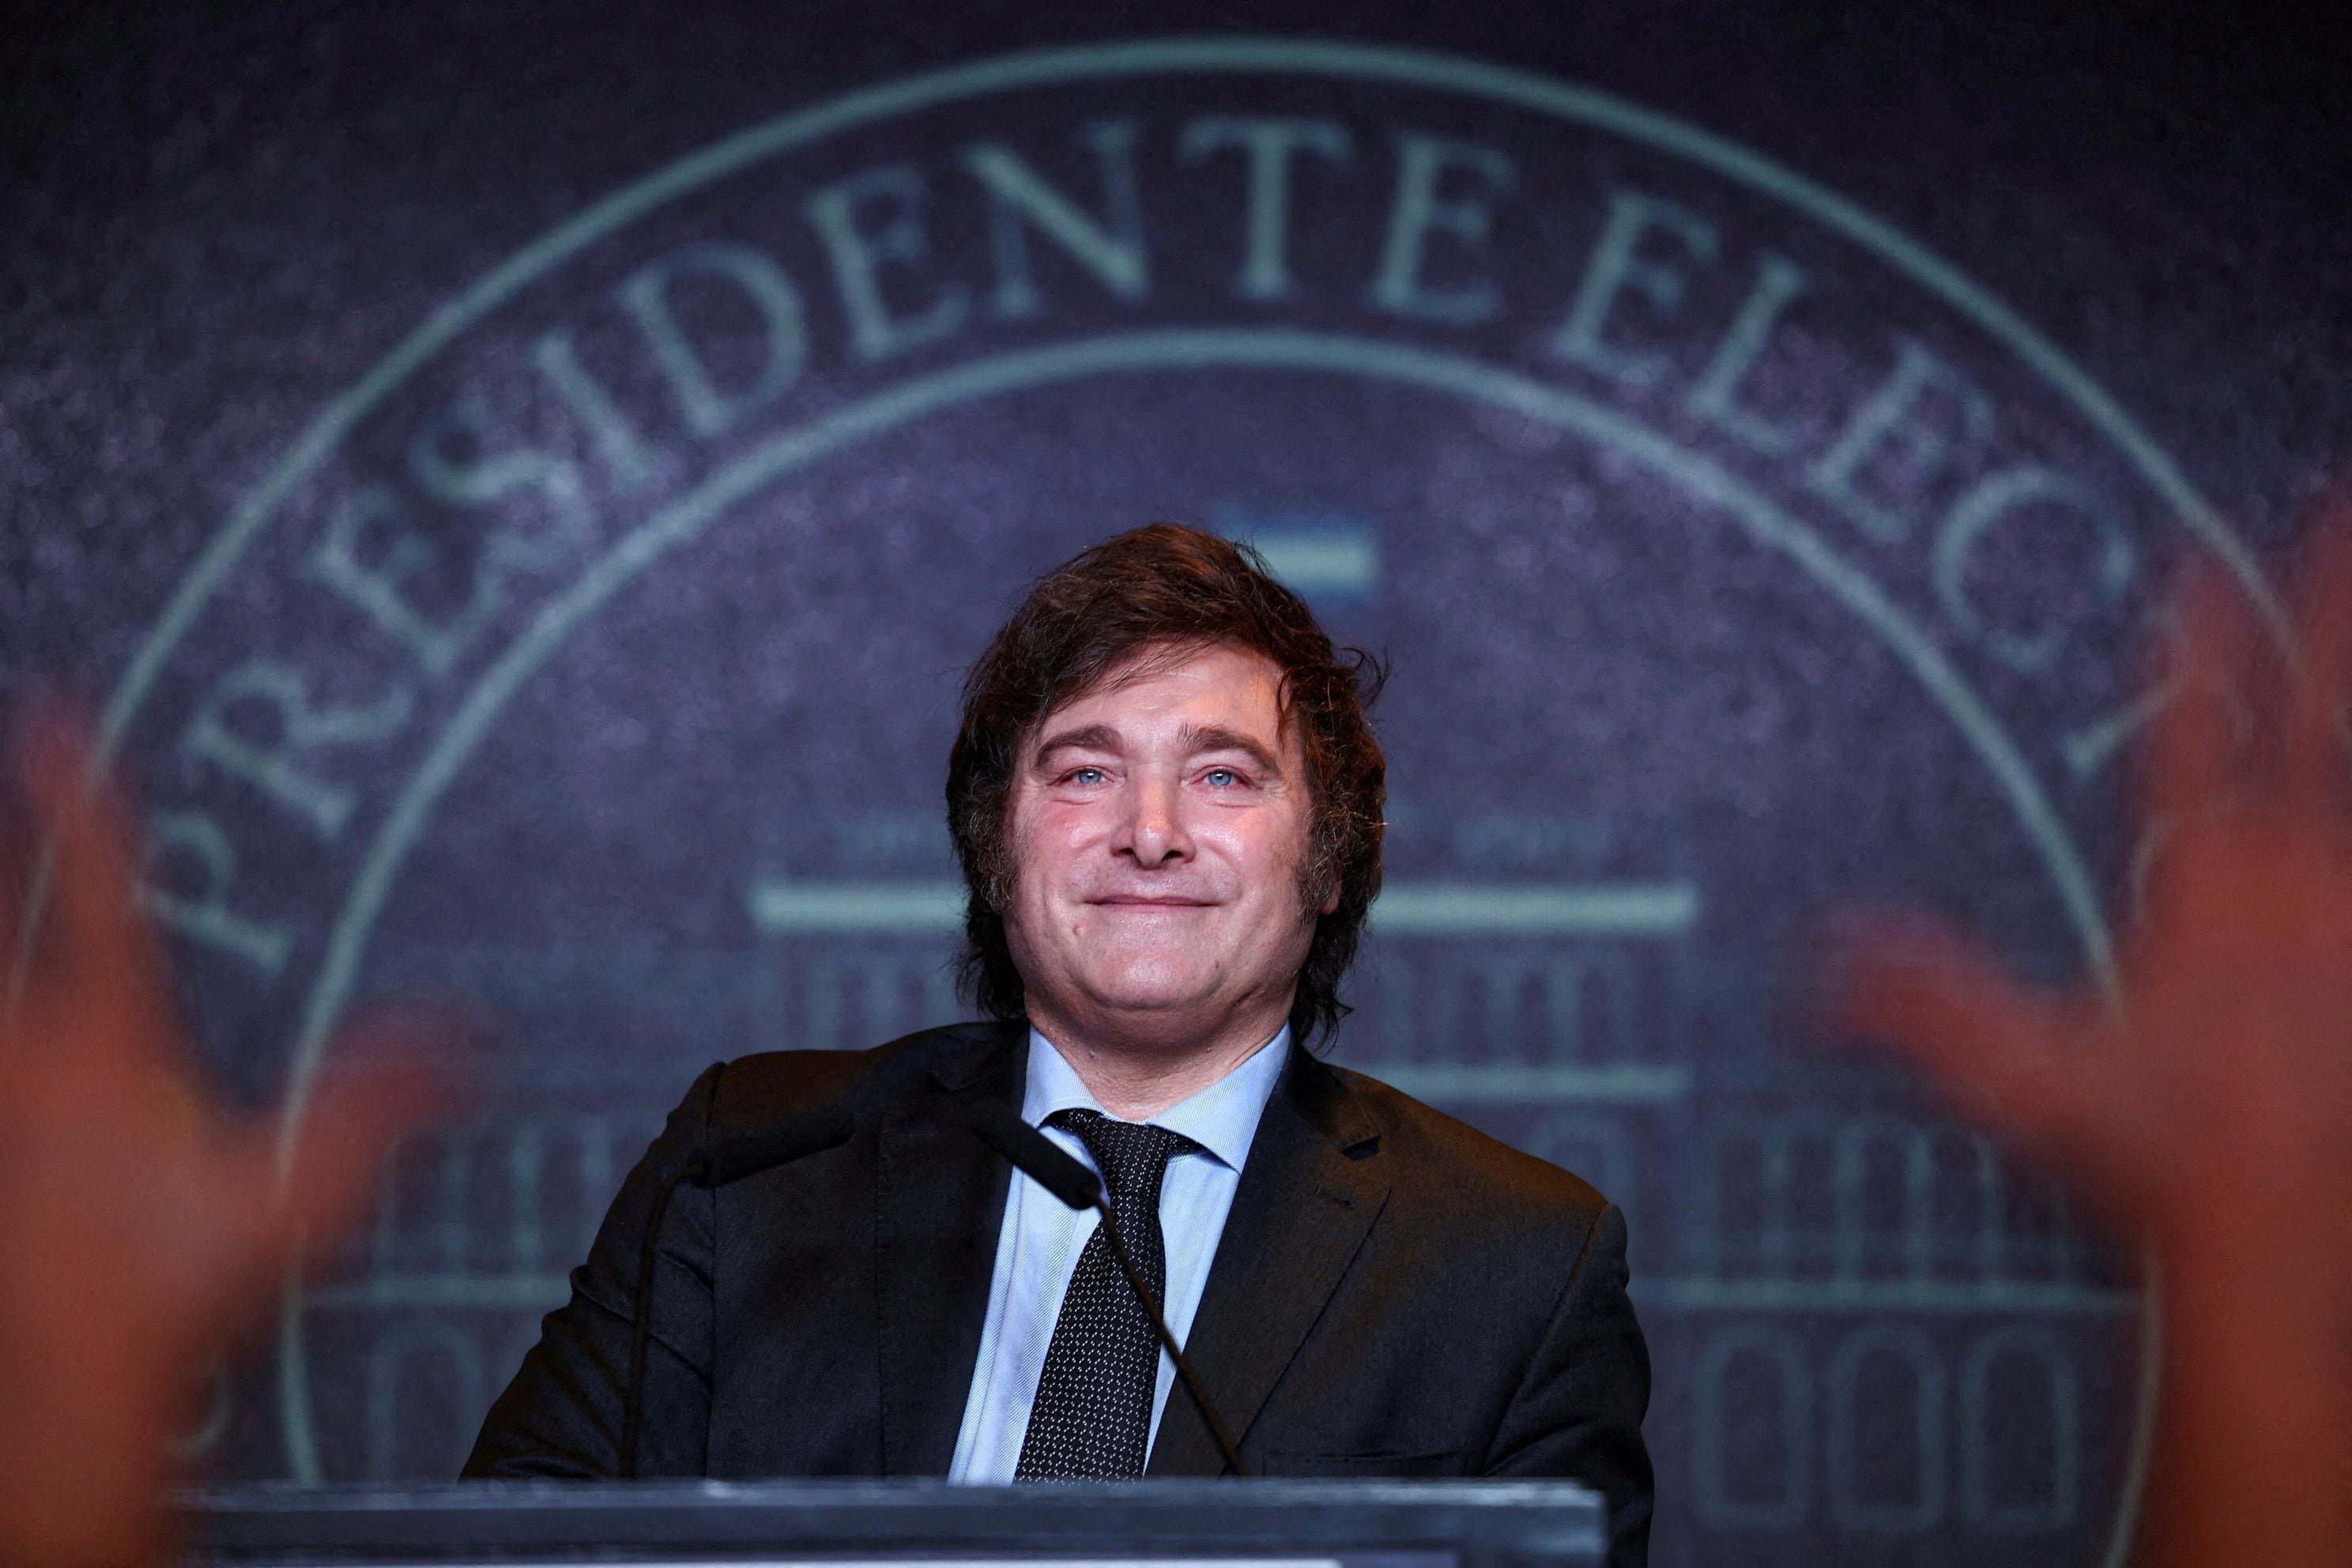 milei da un giro de 180 grados al invitar a lula a su toma de posesión como presidente de argentina